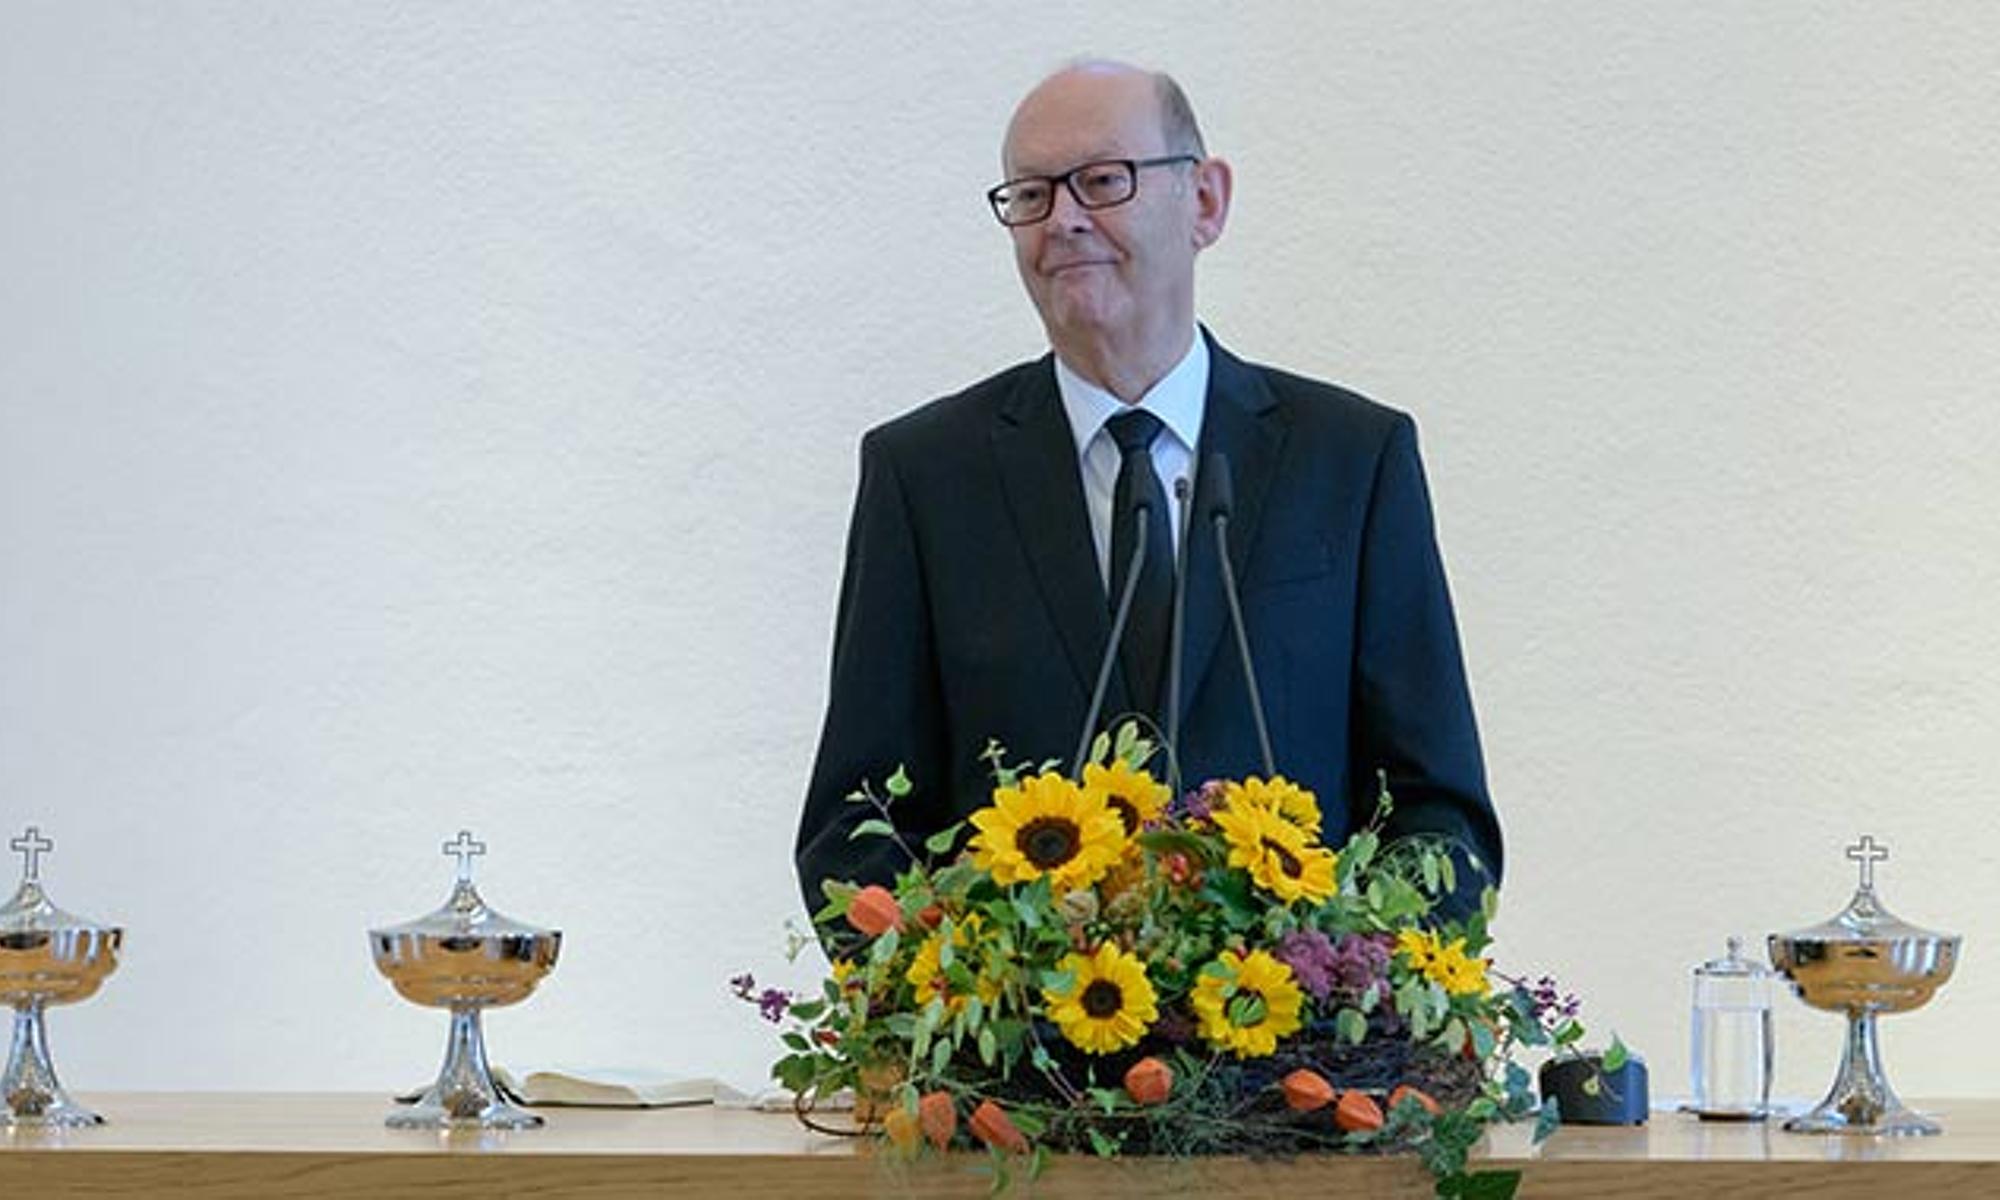 Ap. Schönenborn übernimmt die Aufgabe als Ökumene-Beauftragter der Gebietskirche